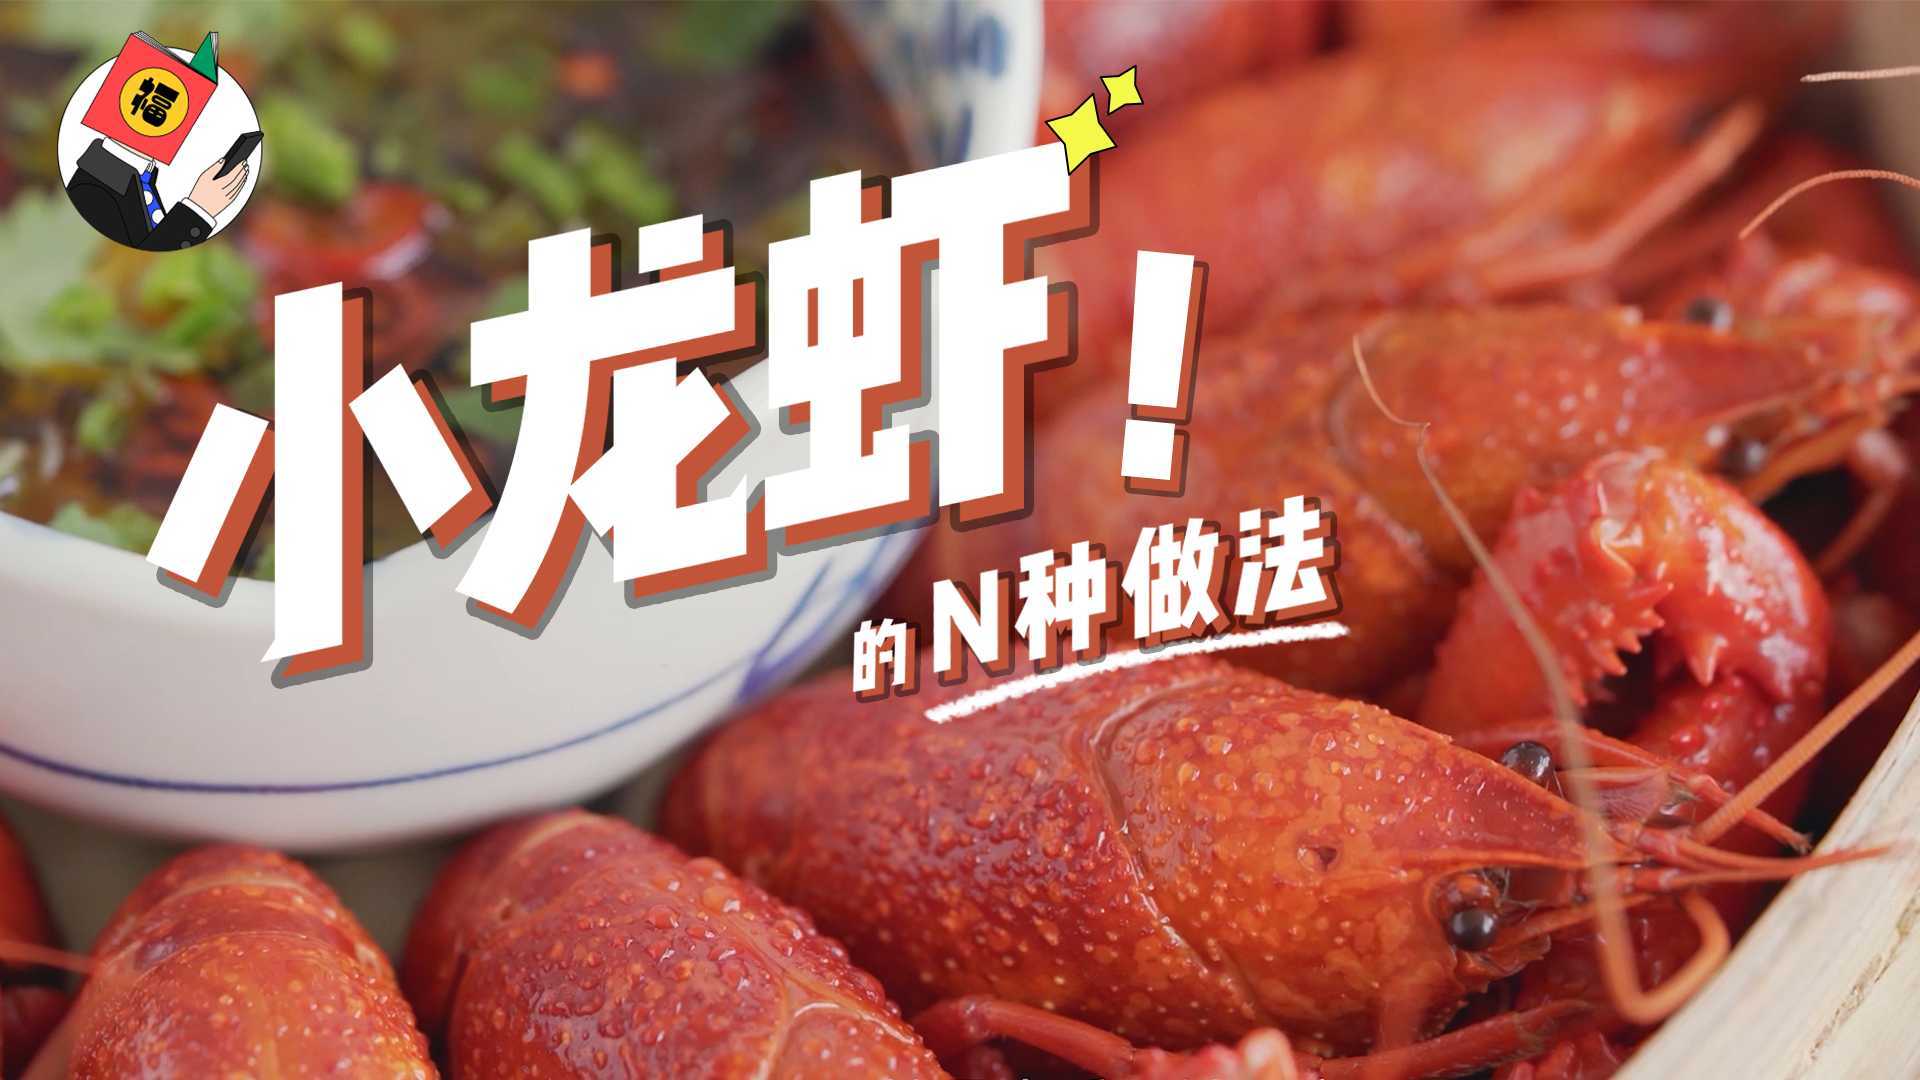 【德福白月光】小龙虾 N 种做法-恋爱可以慢慢谈，龙虾需得趁热吃